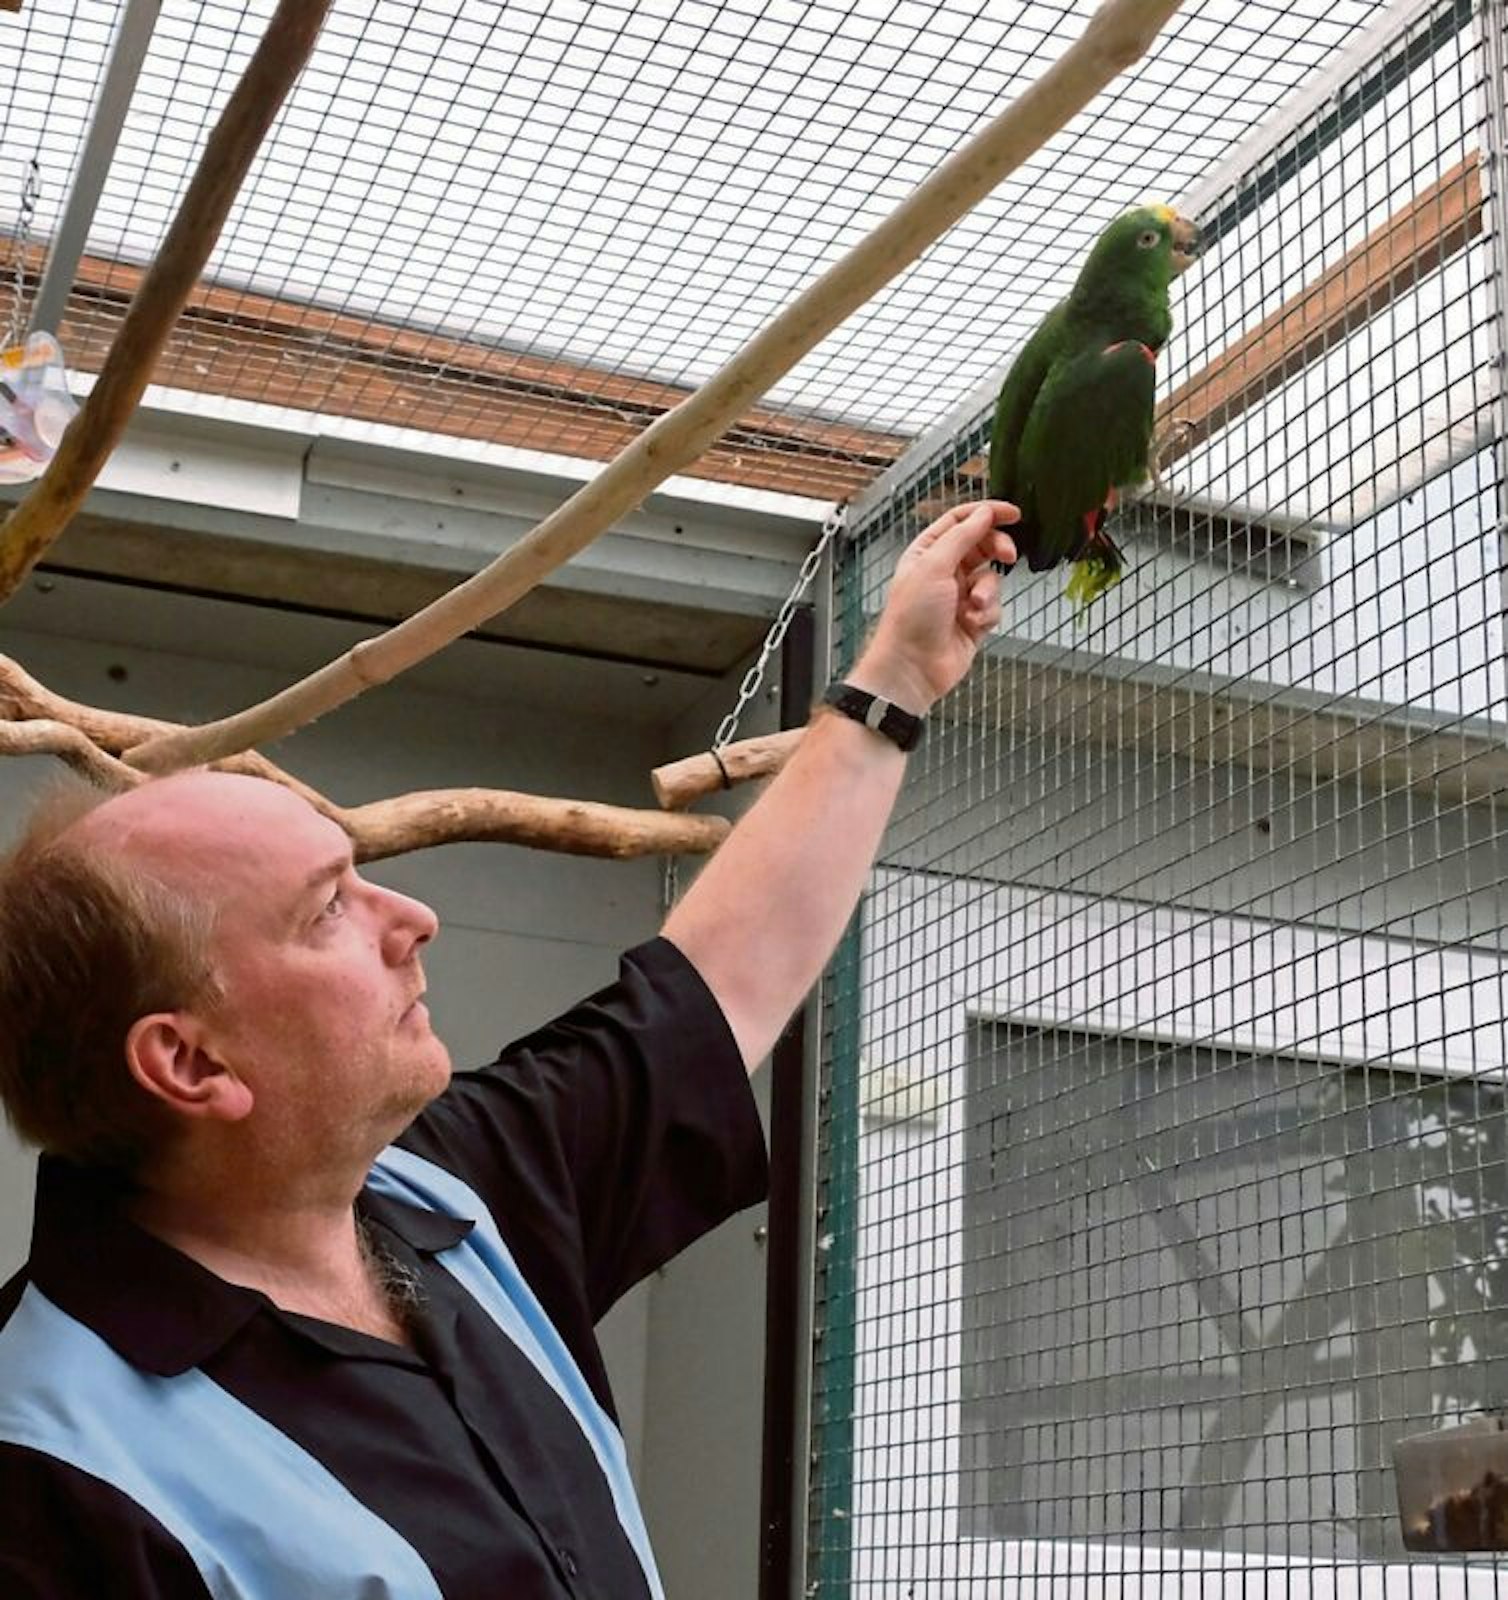 Papageien brauchen geräumige und stabile Volieren, damit sie auch wirklich tierschutzgerecht gehalten werden können, sagt Franz Josef Diefenthal.